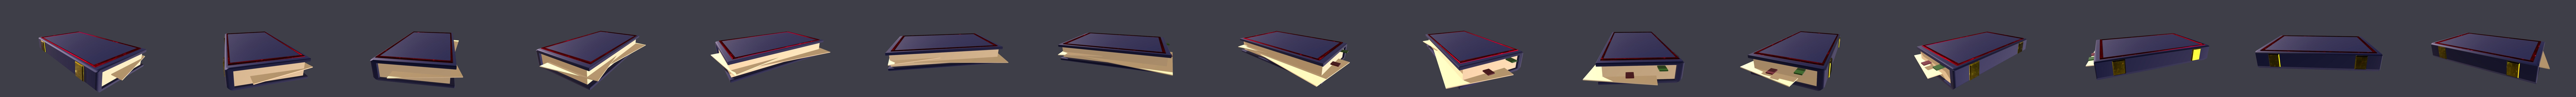 Magicbook 3D models - Sketchfab